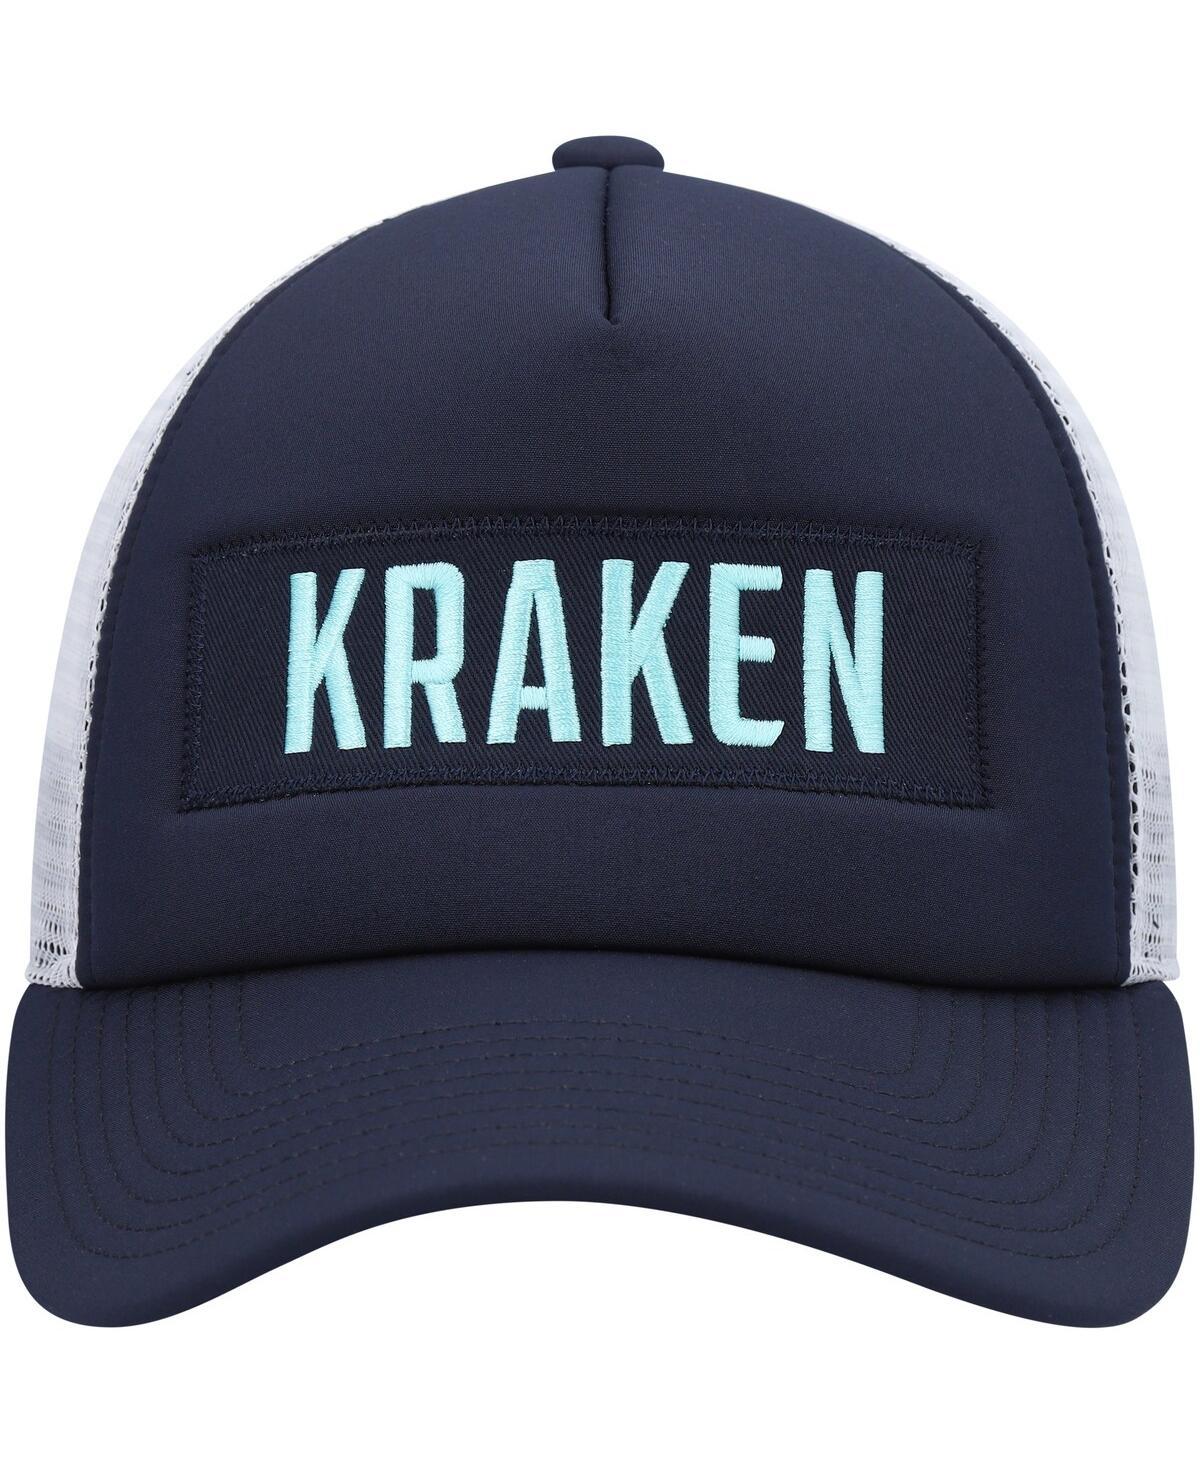 Seattle Kraken Deep Blue Sea Adidas Cuffed Knit Hat